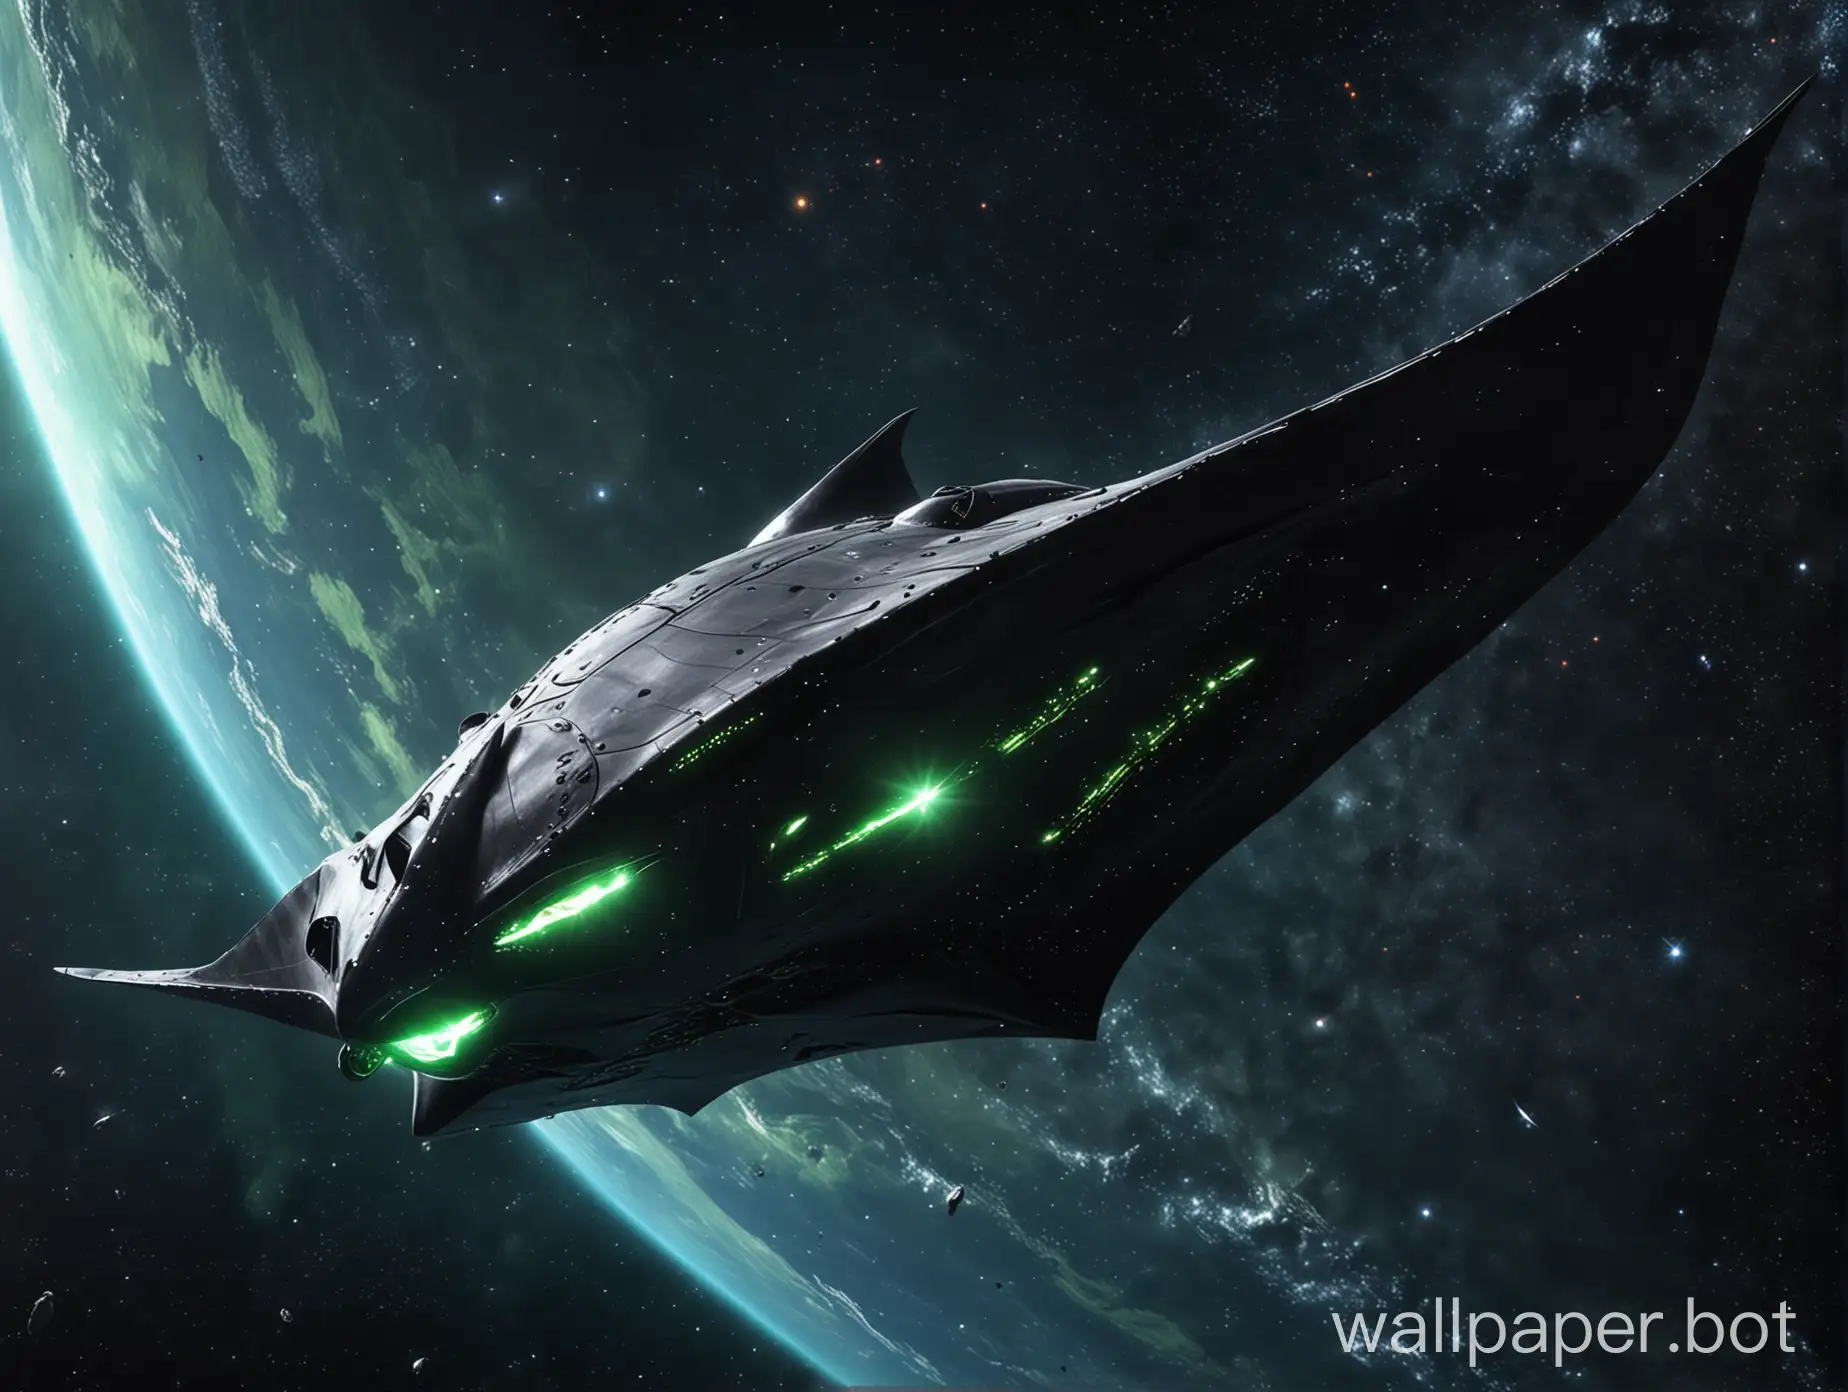 гигантский космический корабль в виде морского ската лети в космосе, вид с расстояния, яркая зеленая звезда на заднем плане, темный фон, фотореализм, в жанре научная фантастика